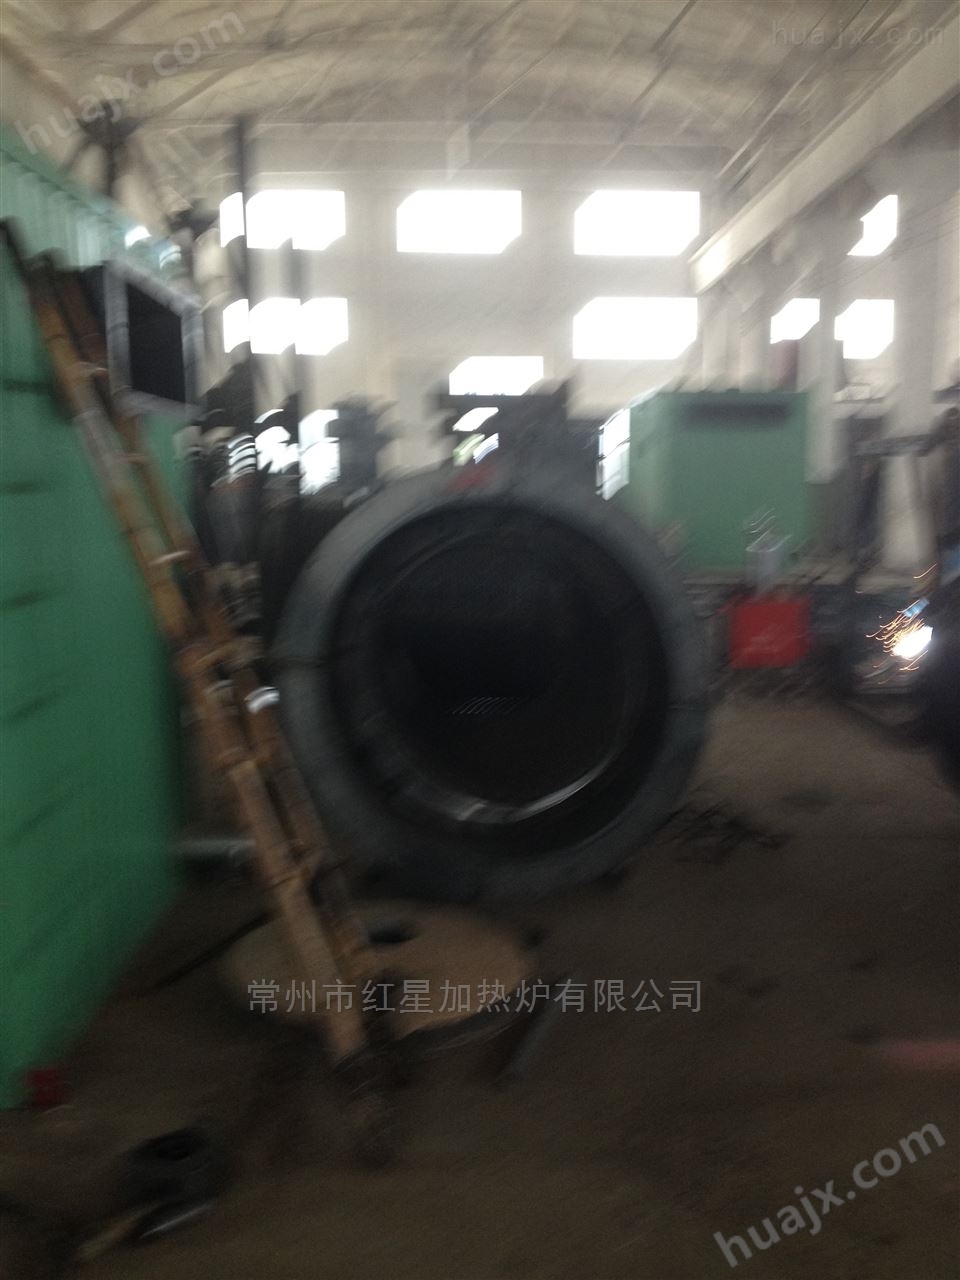 江苏沭阳燃气锅炉生产江苏锅炉专业生产厂家